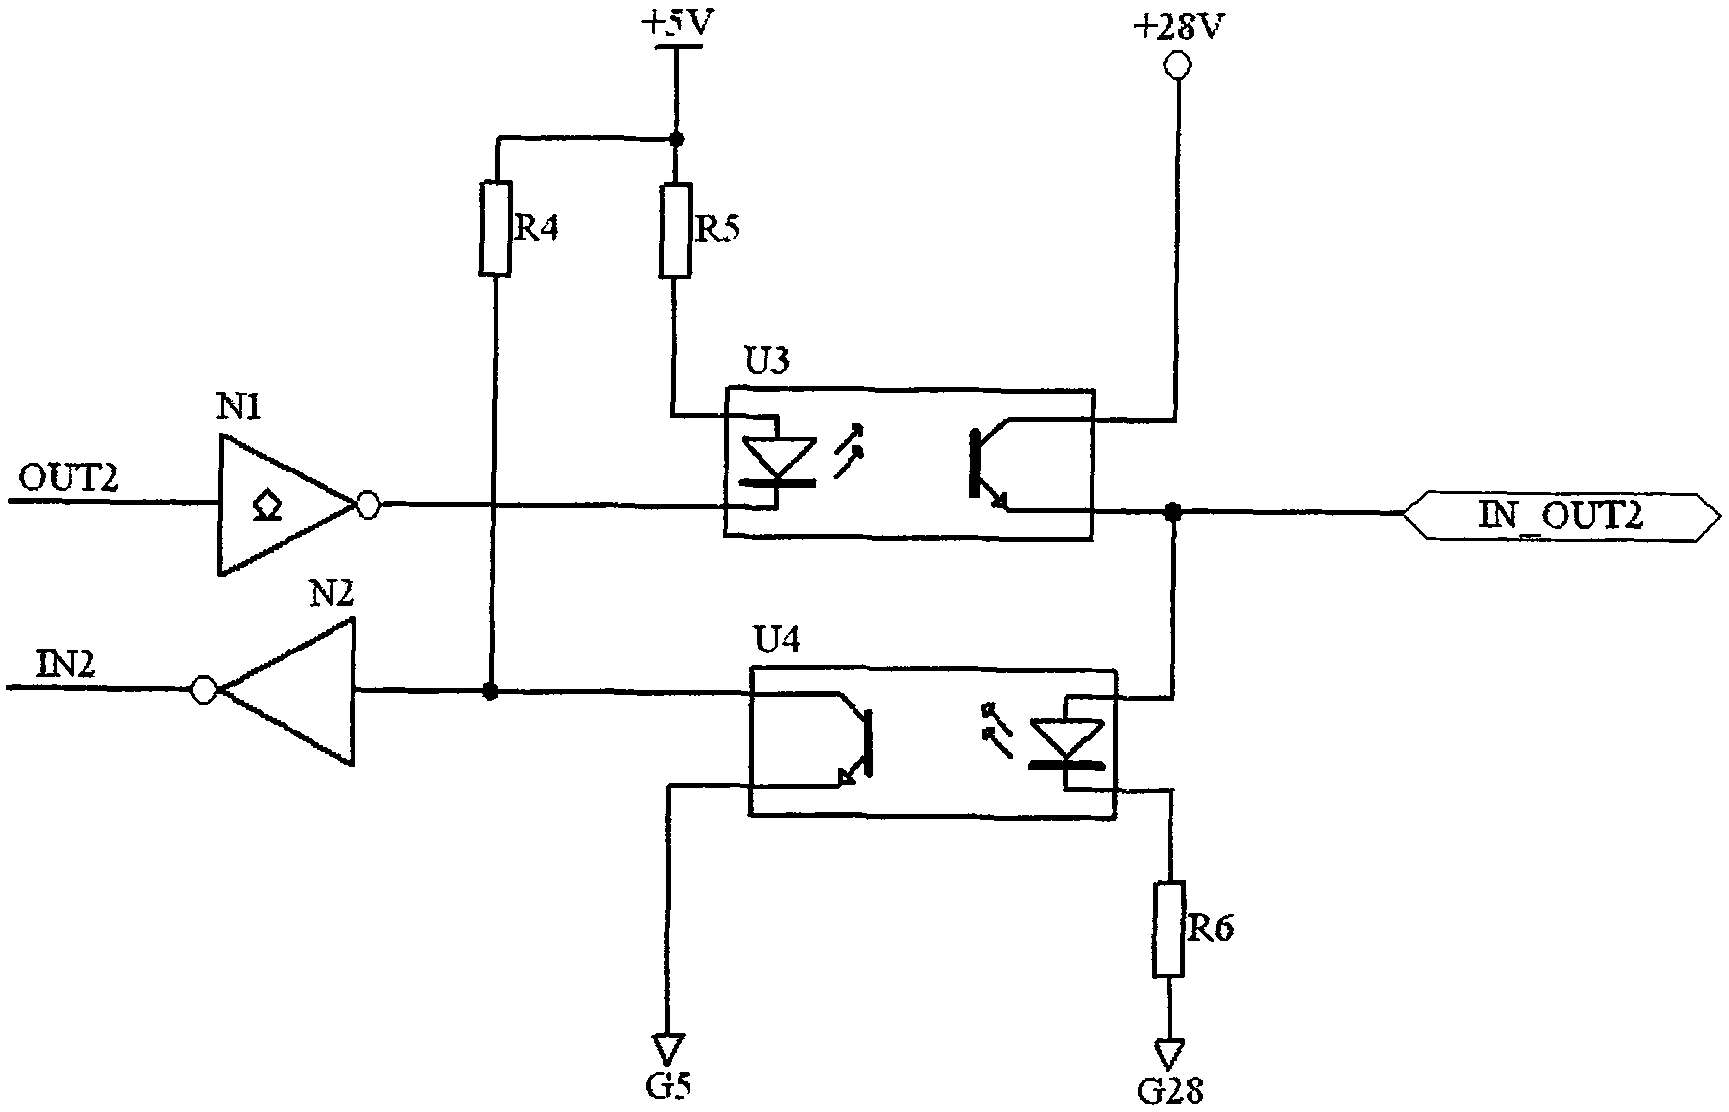 Bilateral input/output port circuit